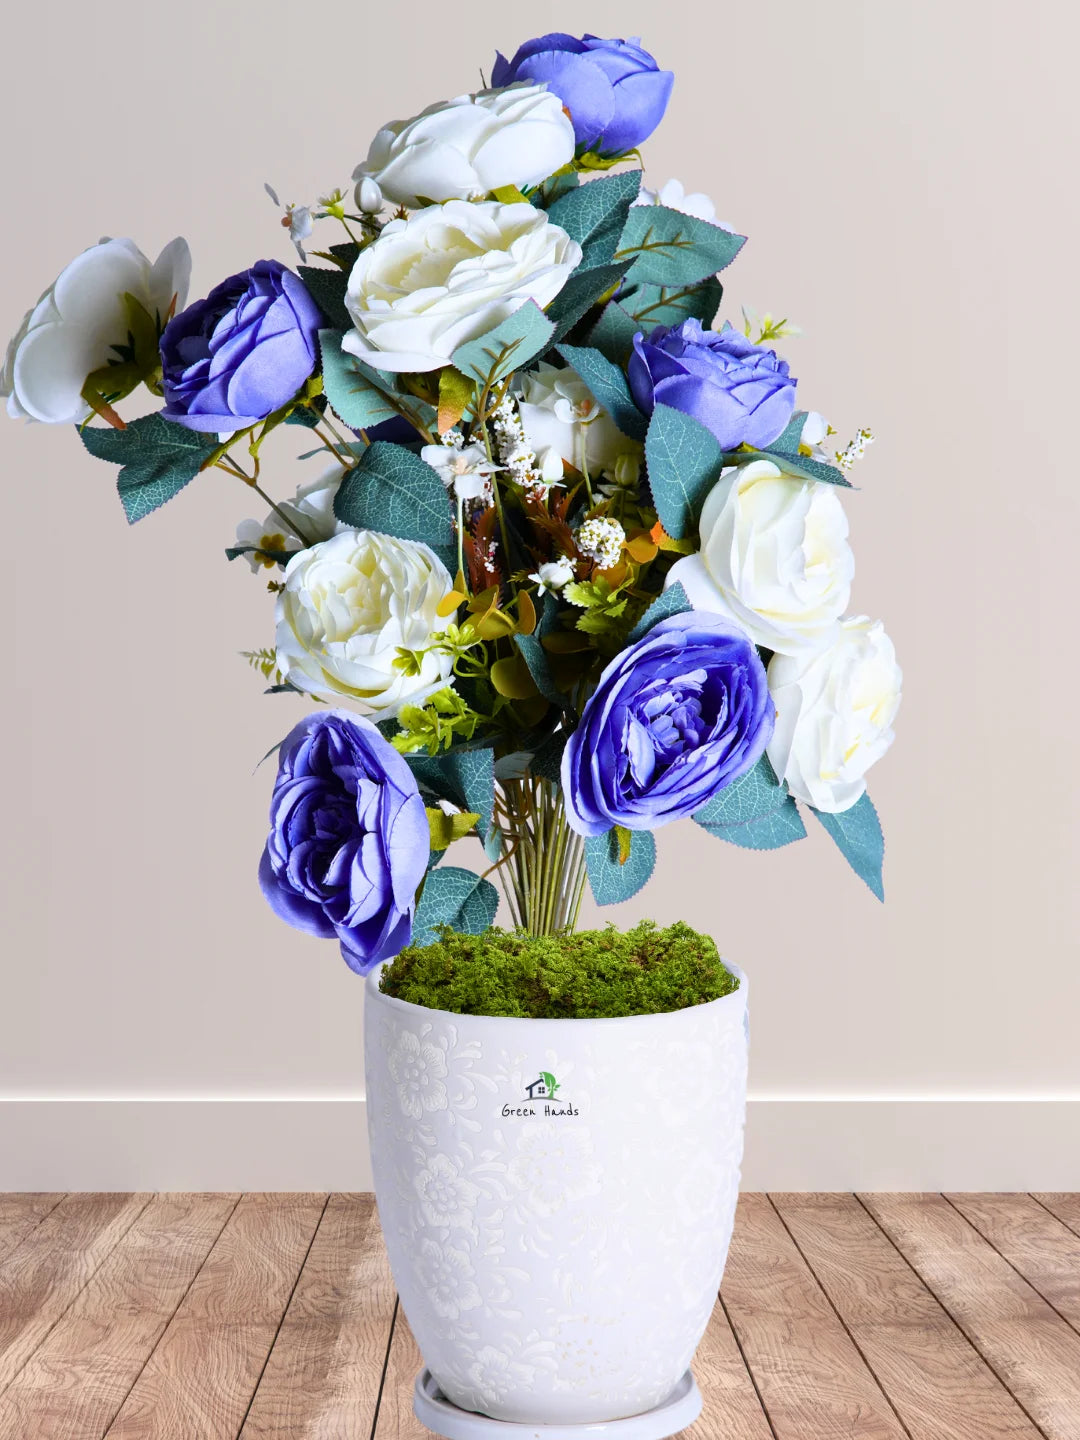 Premium Artificial 27 Roses in Blossom White Floral Ceramic Pot